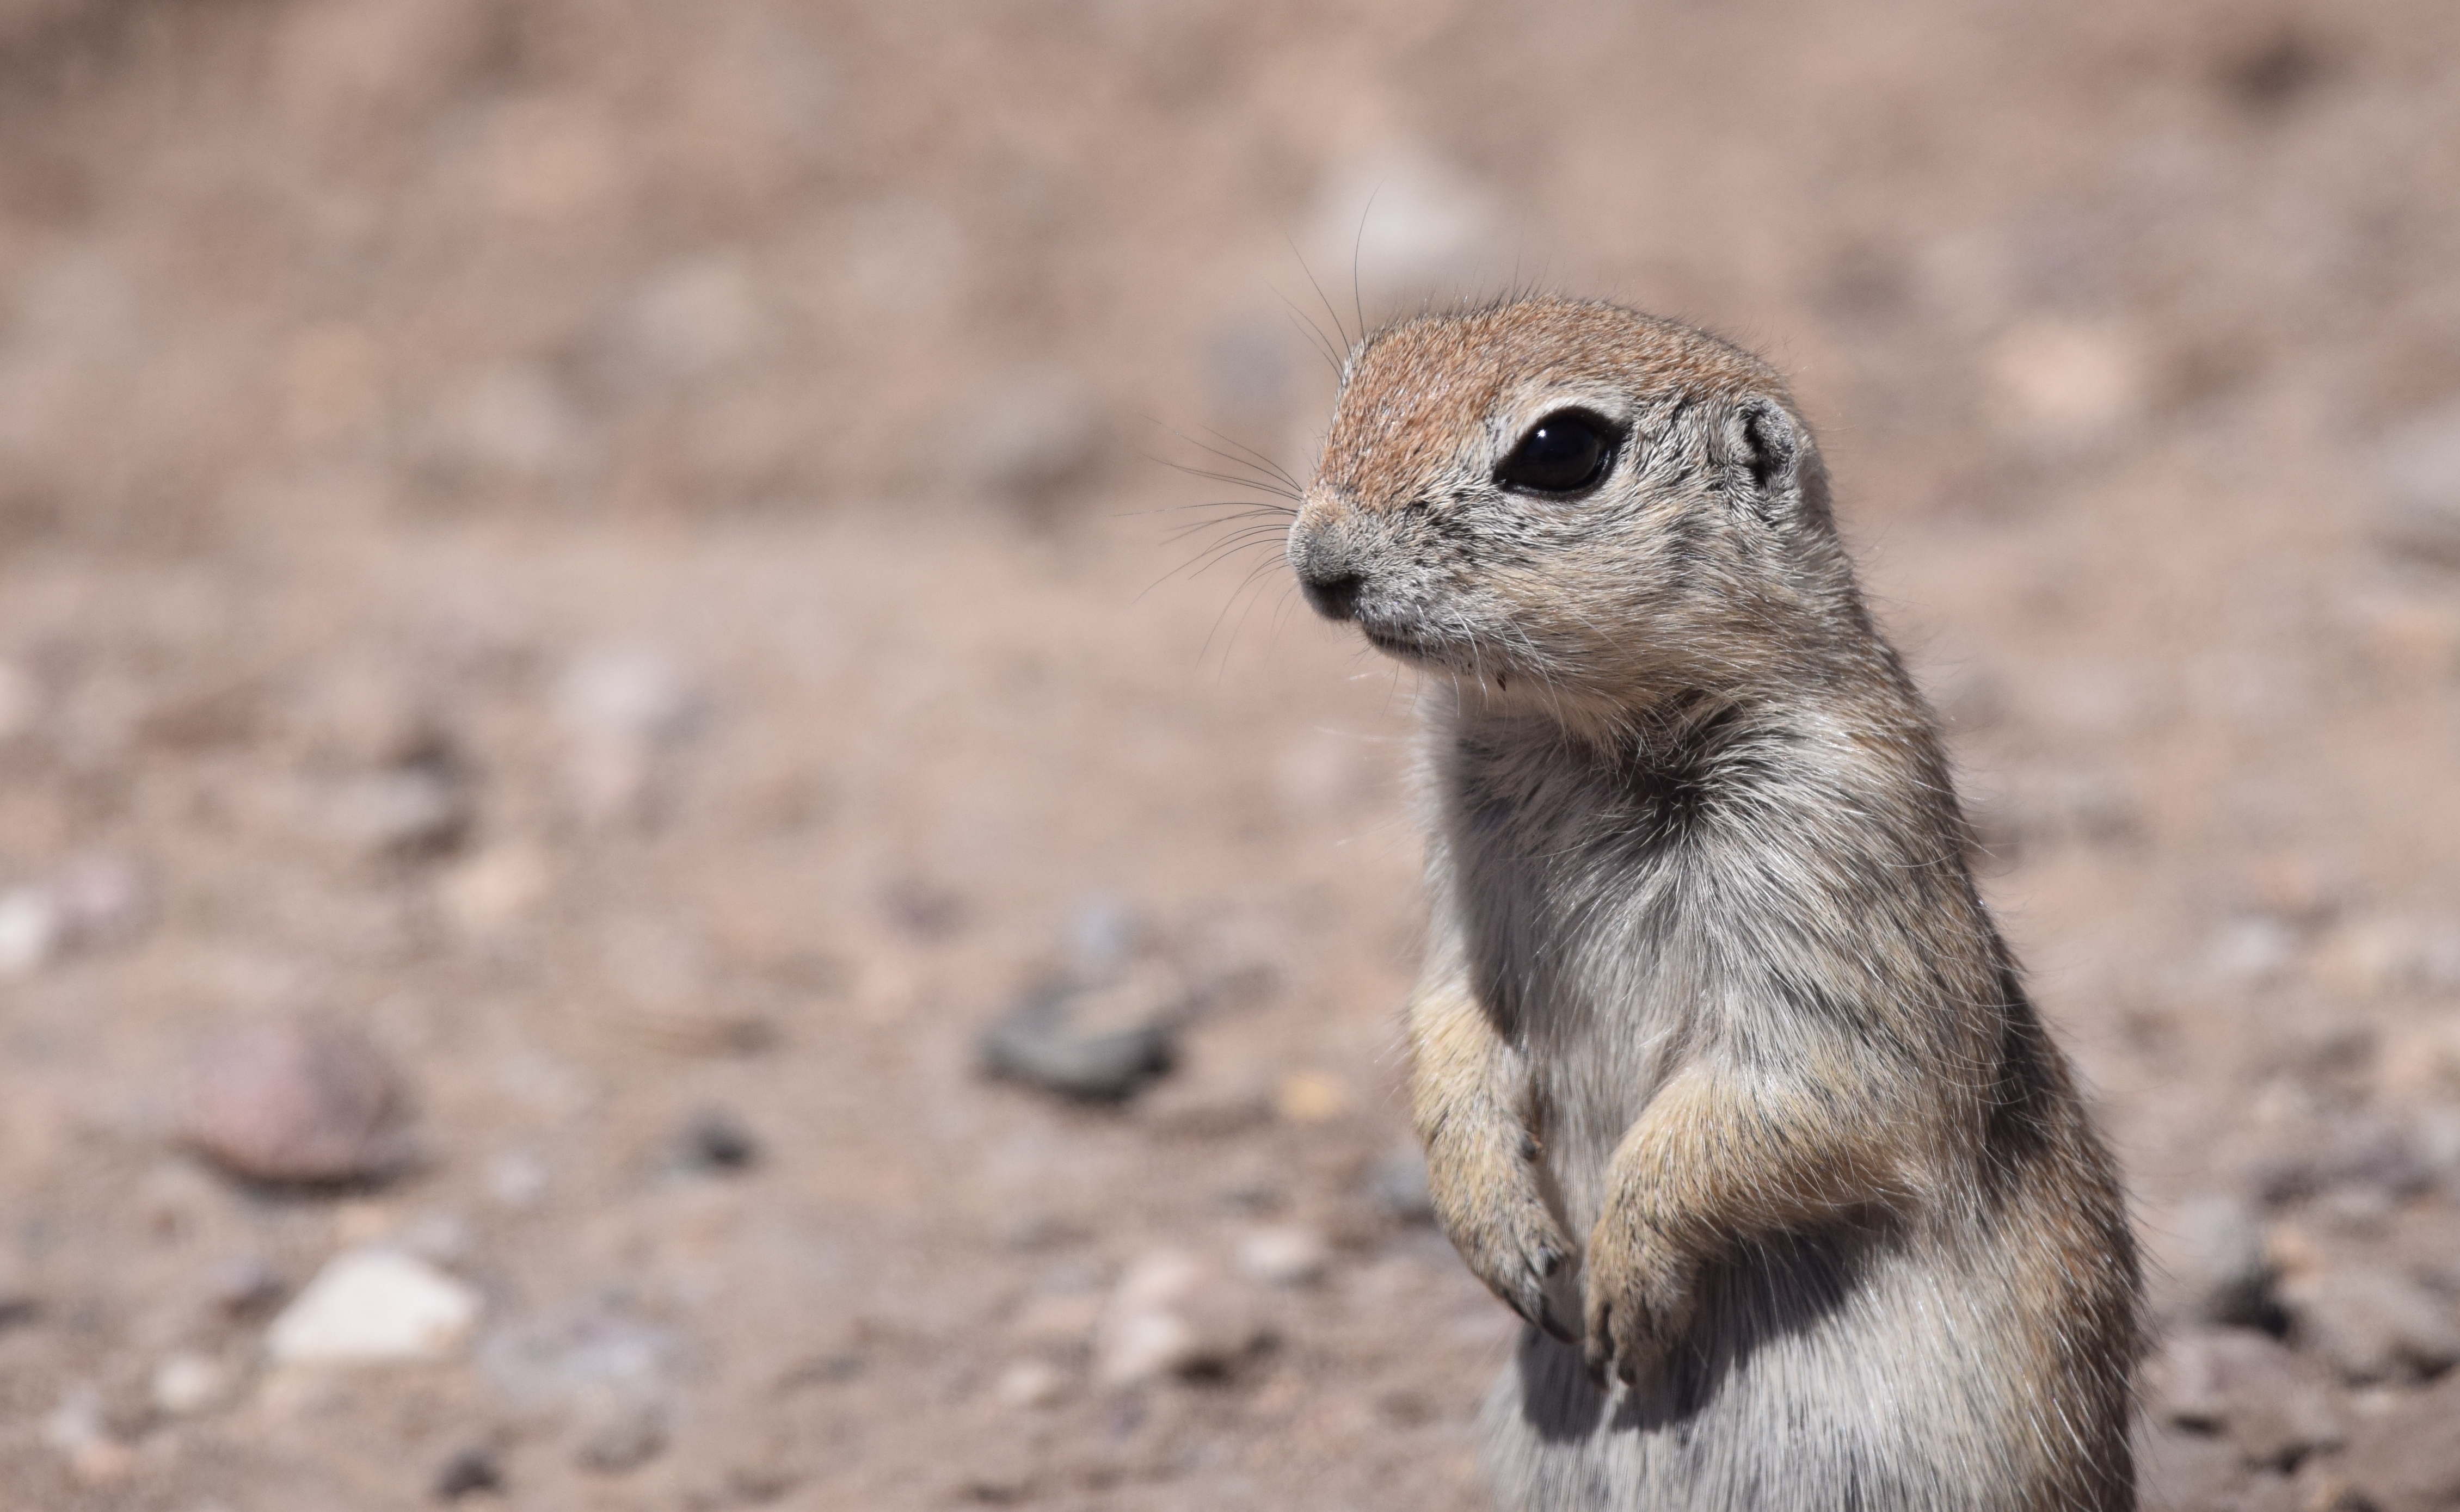 File:Arizona Meerkat  Roundtailed Ground Squirrel 33920365505.jpg  Wikimedia Commons